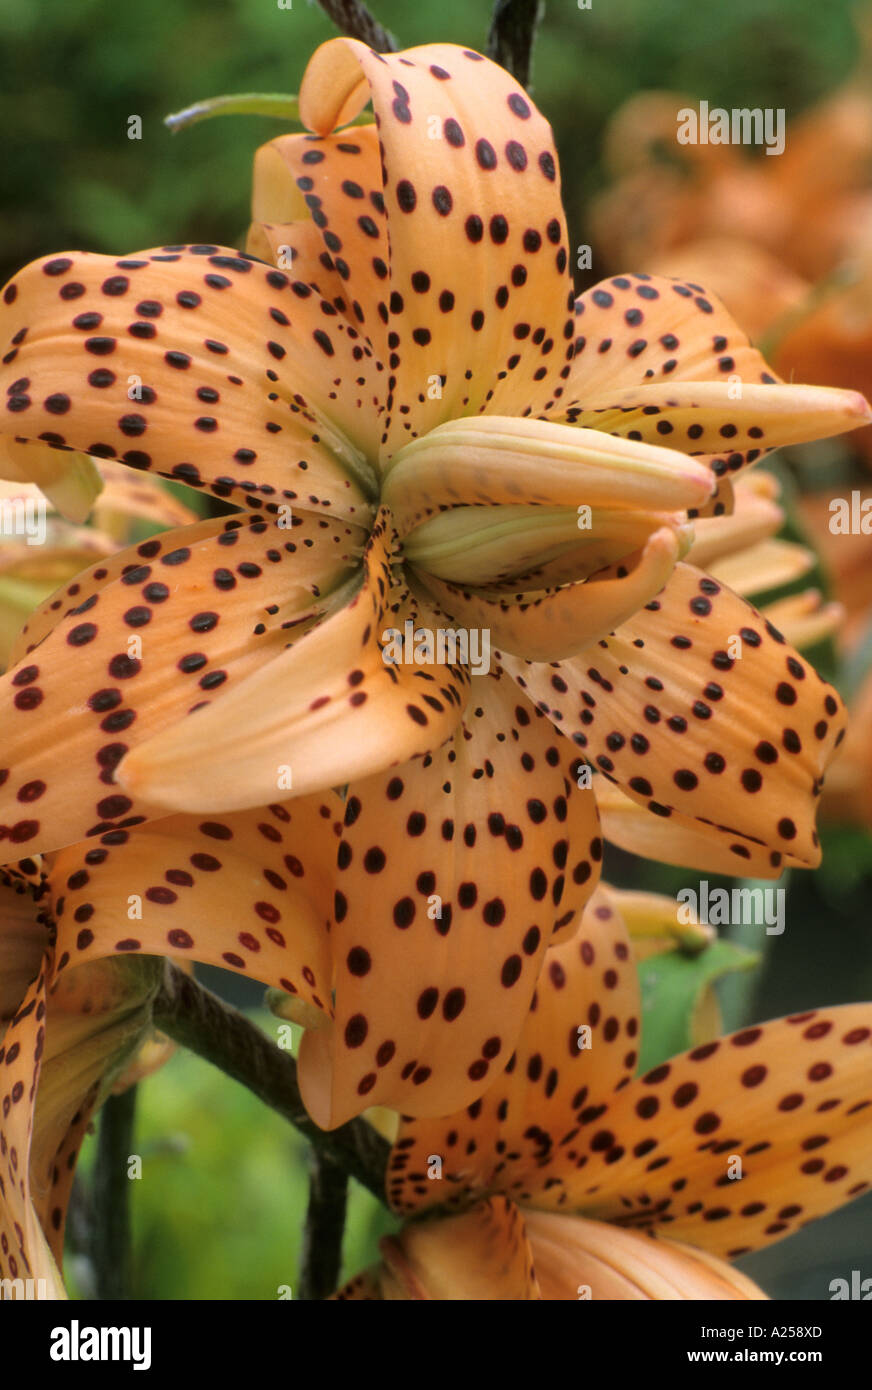 Lilium lancifolium, Lilium tigrinum, Tiger Lily, turkscap orange flower, spotted, bulb, garden plant, horticulture fragrant Stock Photo